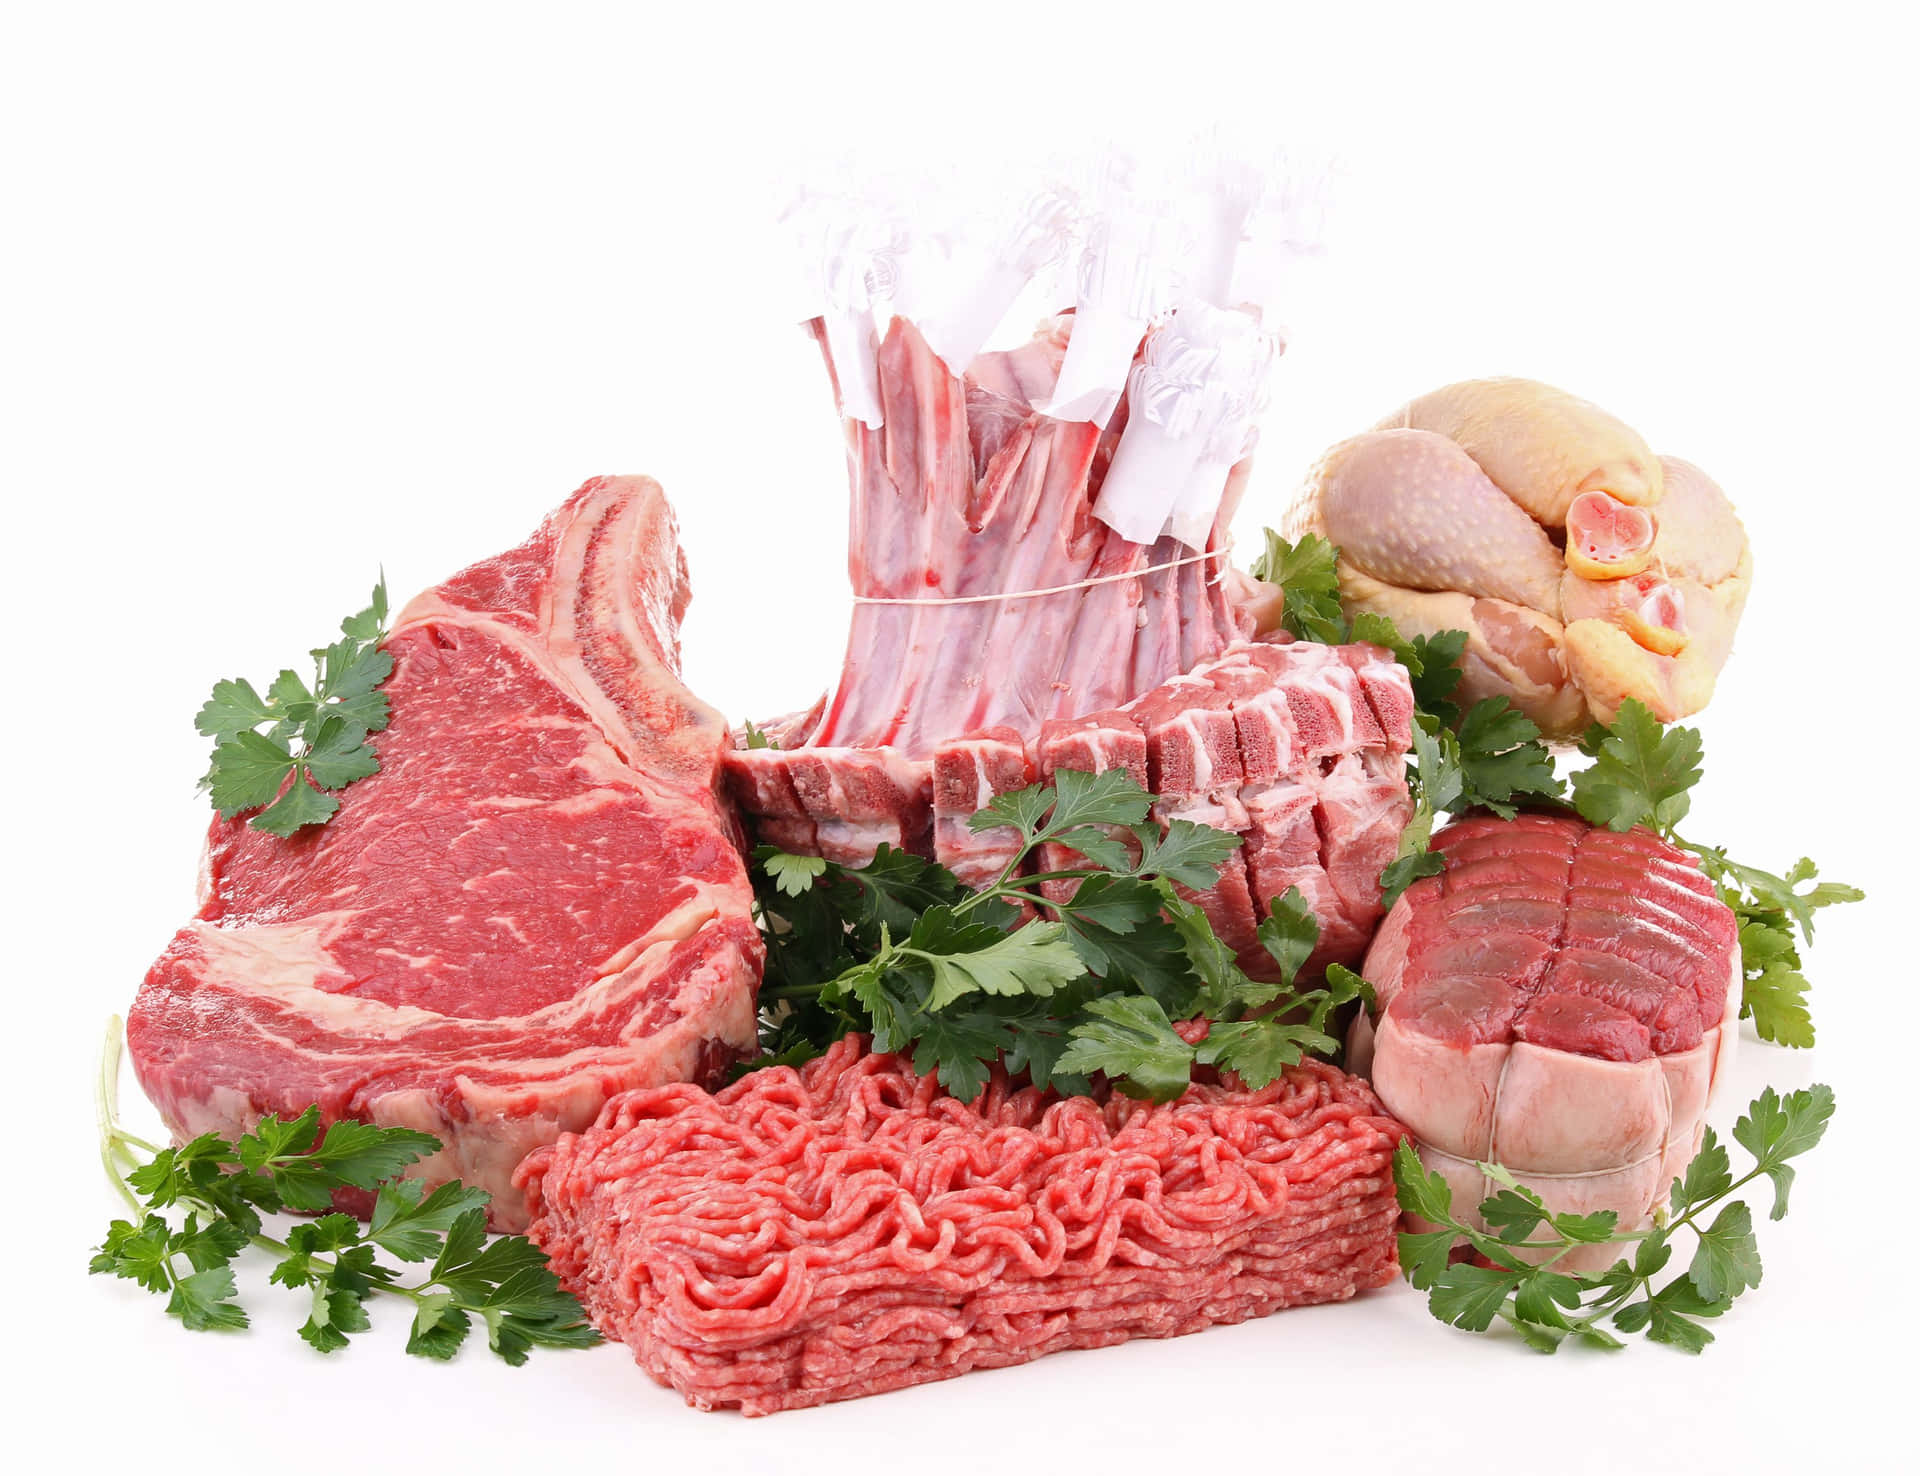 Einevielzahl Von Fleisch Und Gemüse Wird Auf Einem Weißen Hintergrund Arrangiert.